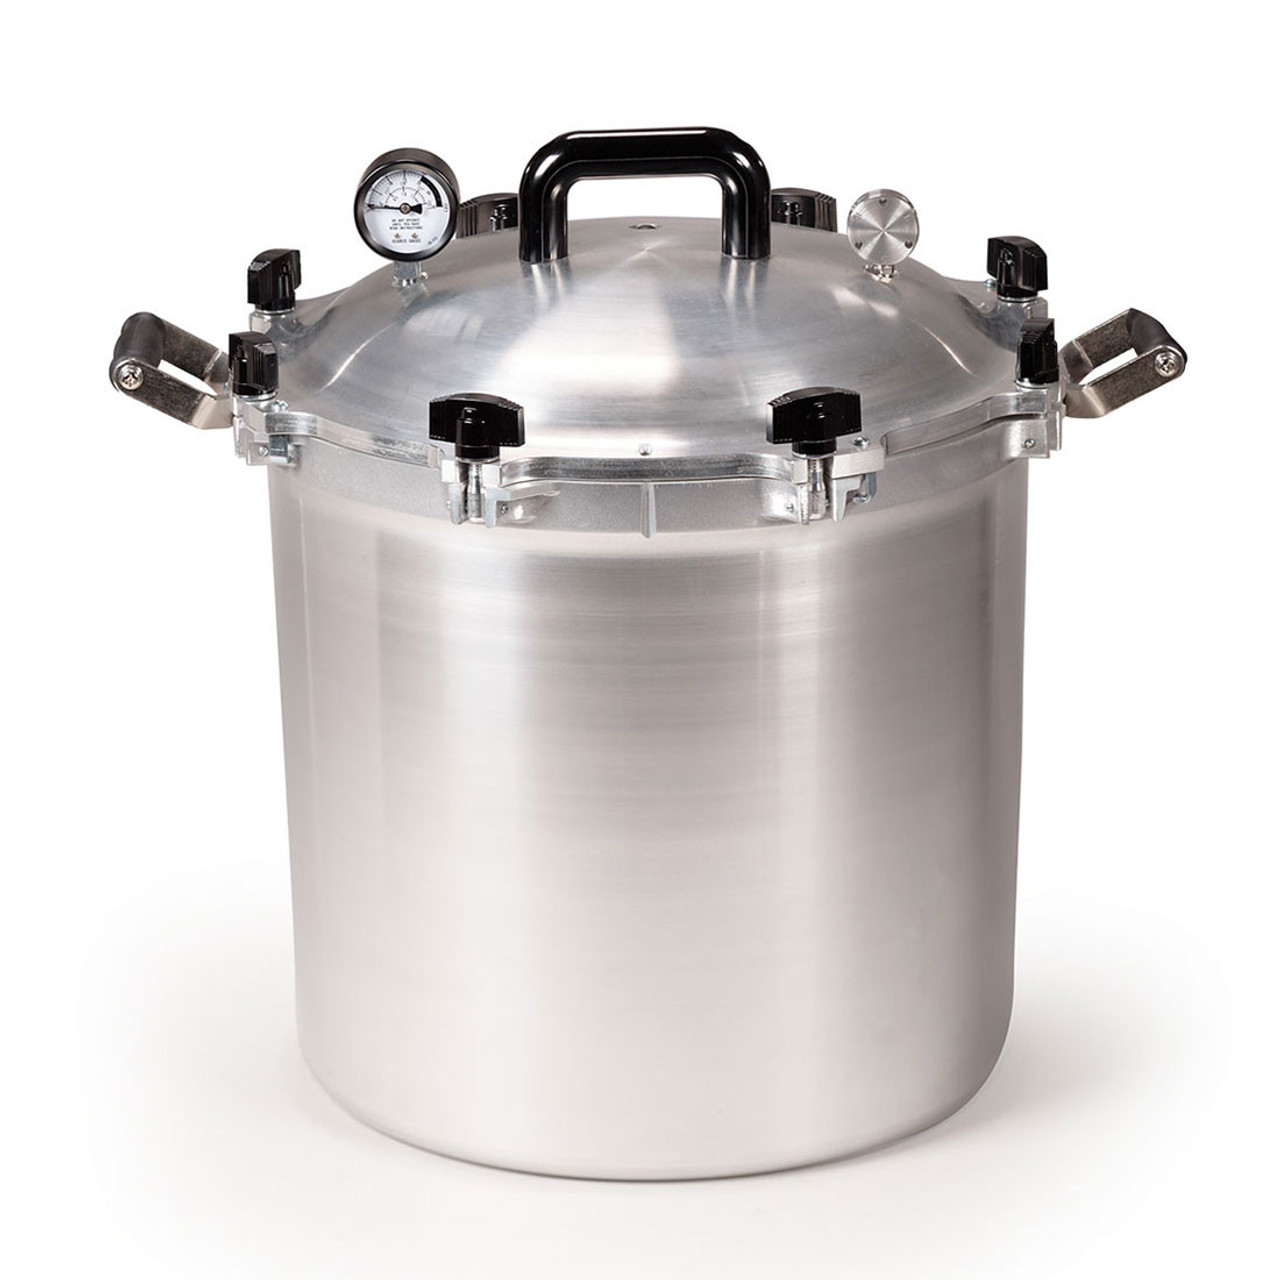 Pressure canner/cooker – KCSR / KBPY